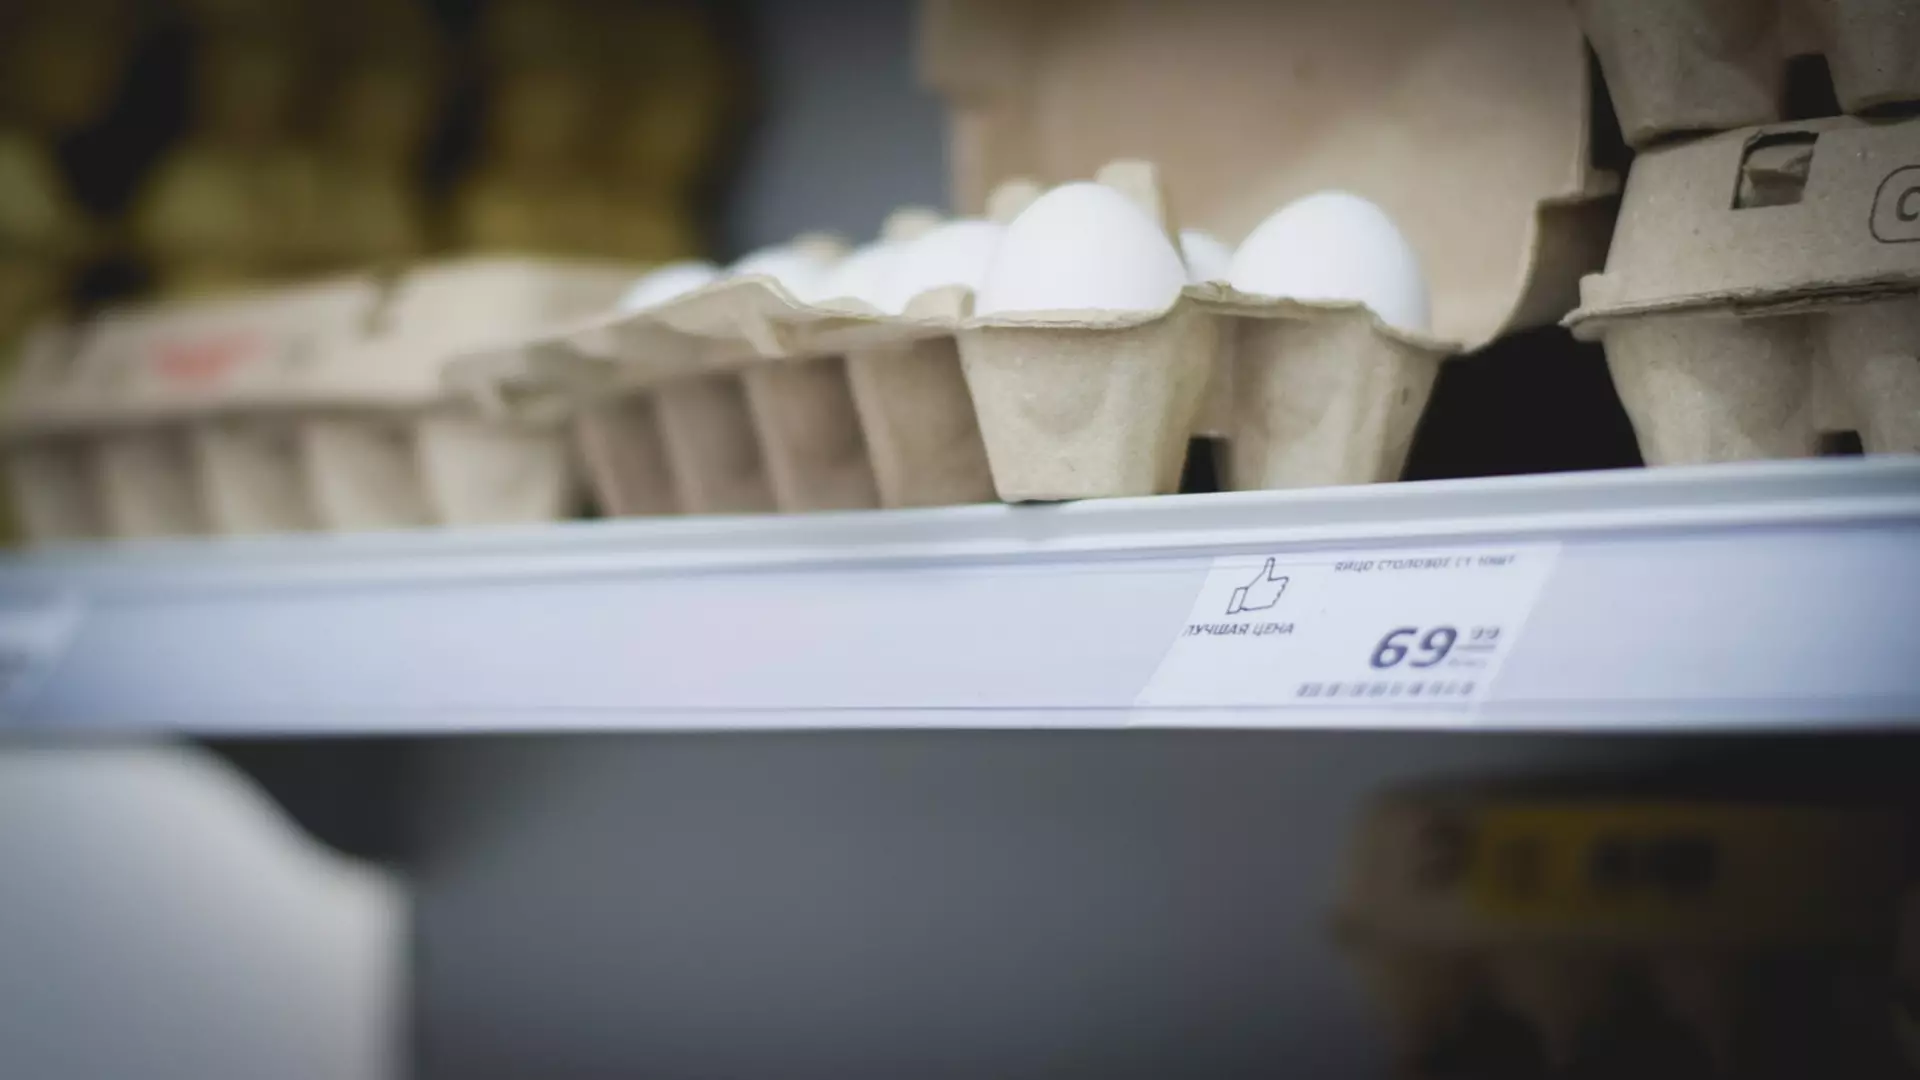 Жители Уфы заметили опустевшие полки в отделе с яйцами в гипермаркете